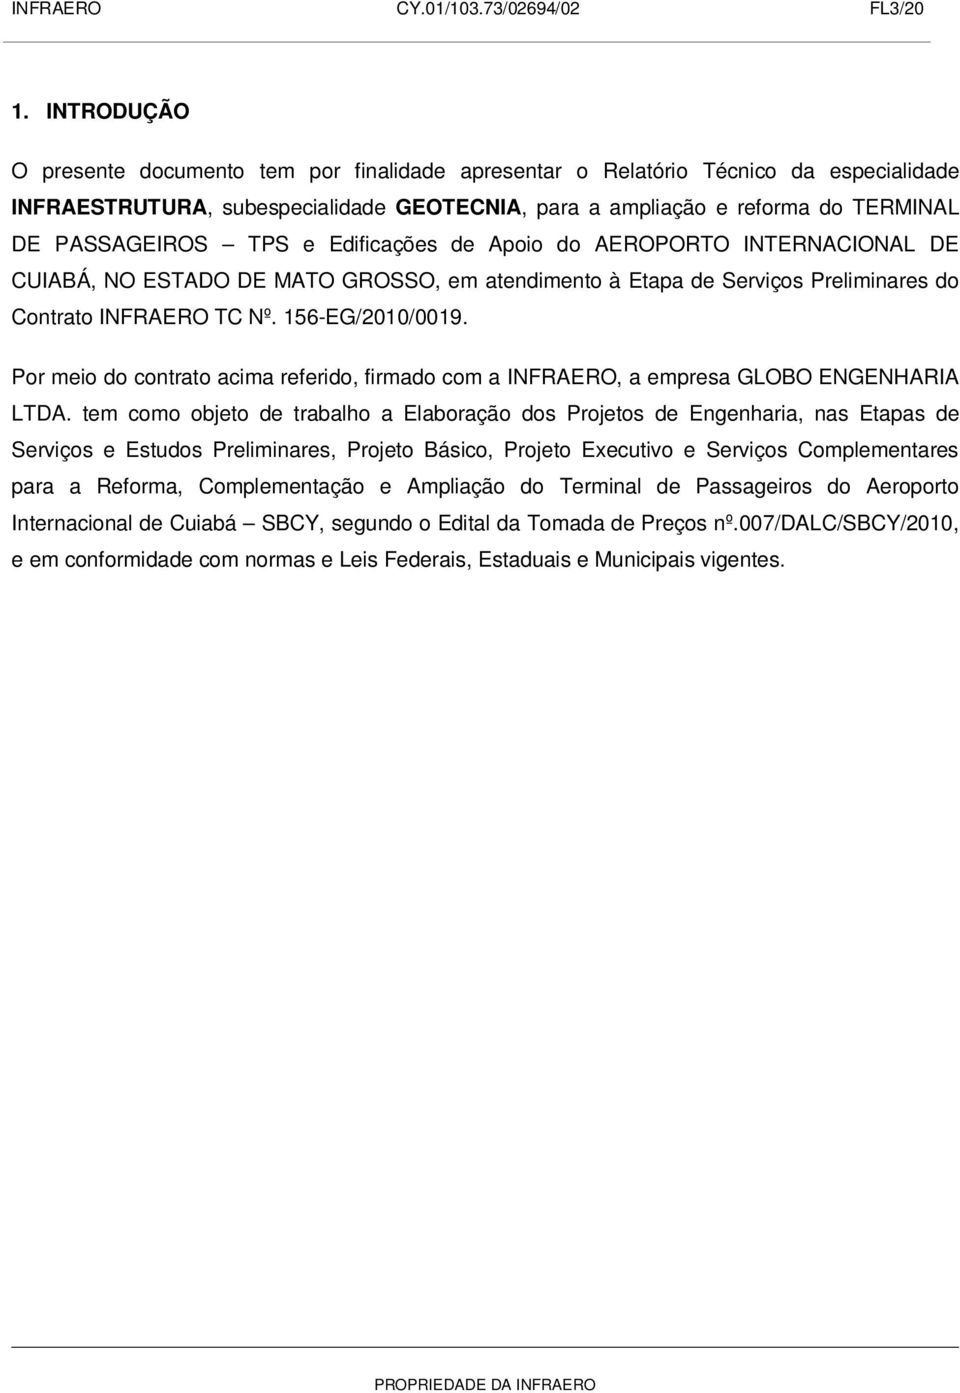 TPS e Edificações de Apoio do AEROPORTO INTERNACIONAL DE CUIABÁ, NO ESTADO DE MATO GROSSO, em atendimento à Etapa de Serviços Preliminares do Contrato INFRAERO TC Nº. 156-EG/2010/0019.